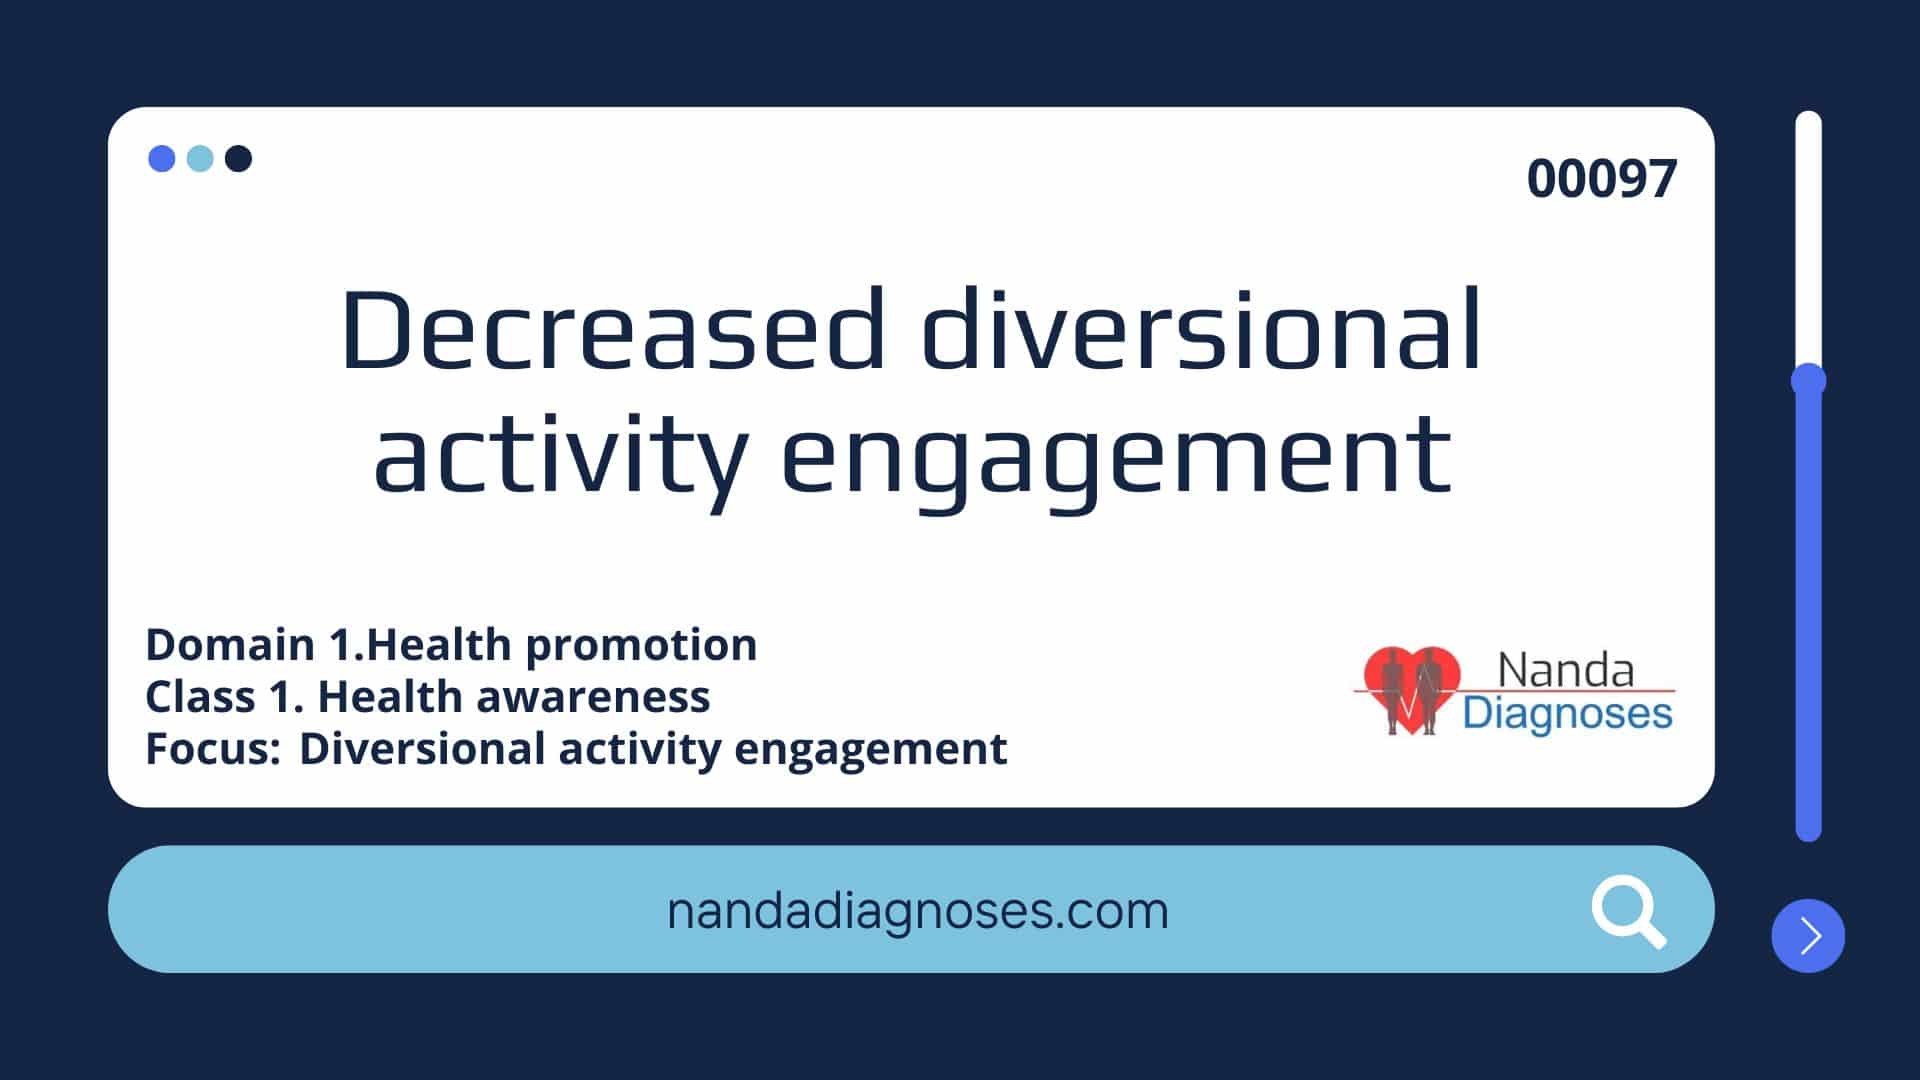 Nursing diagnosis Decreased diversional activity engagement